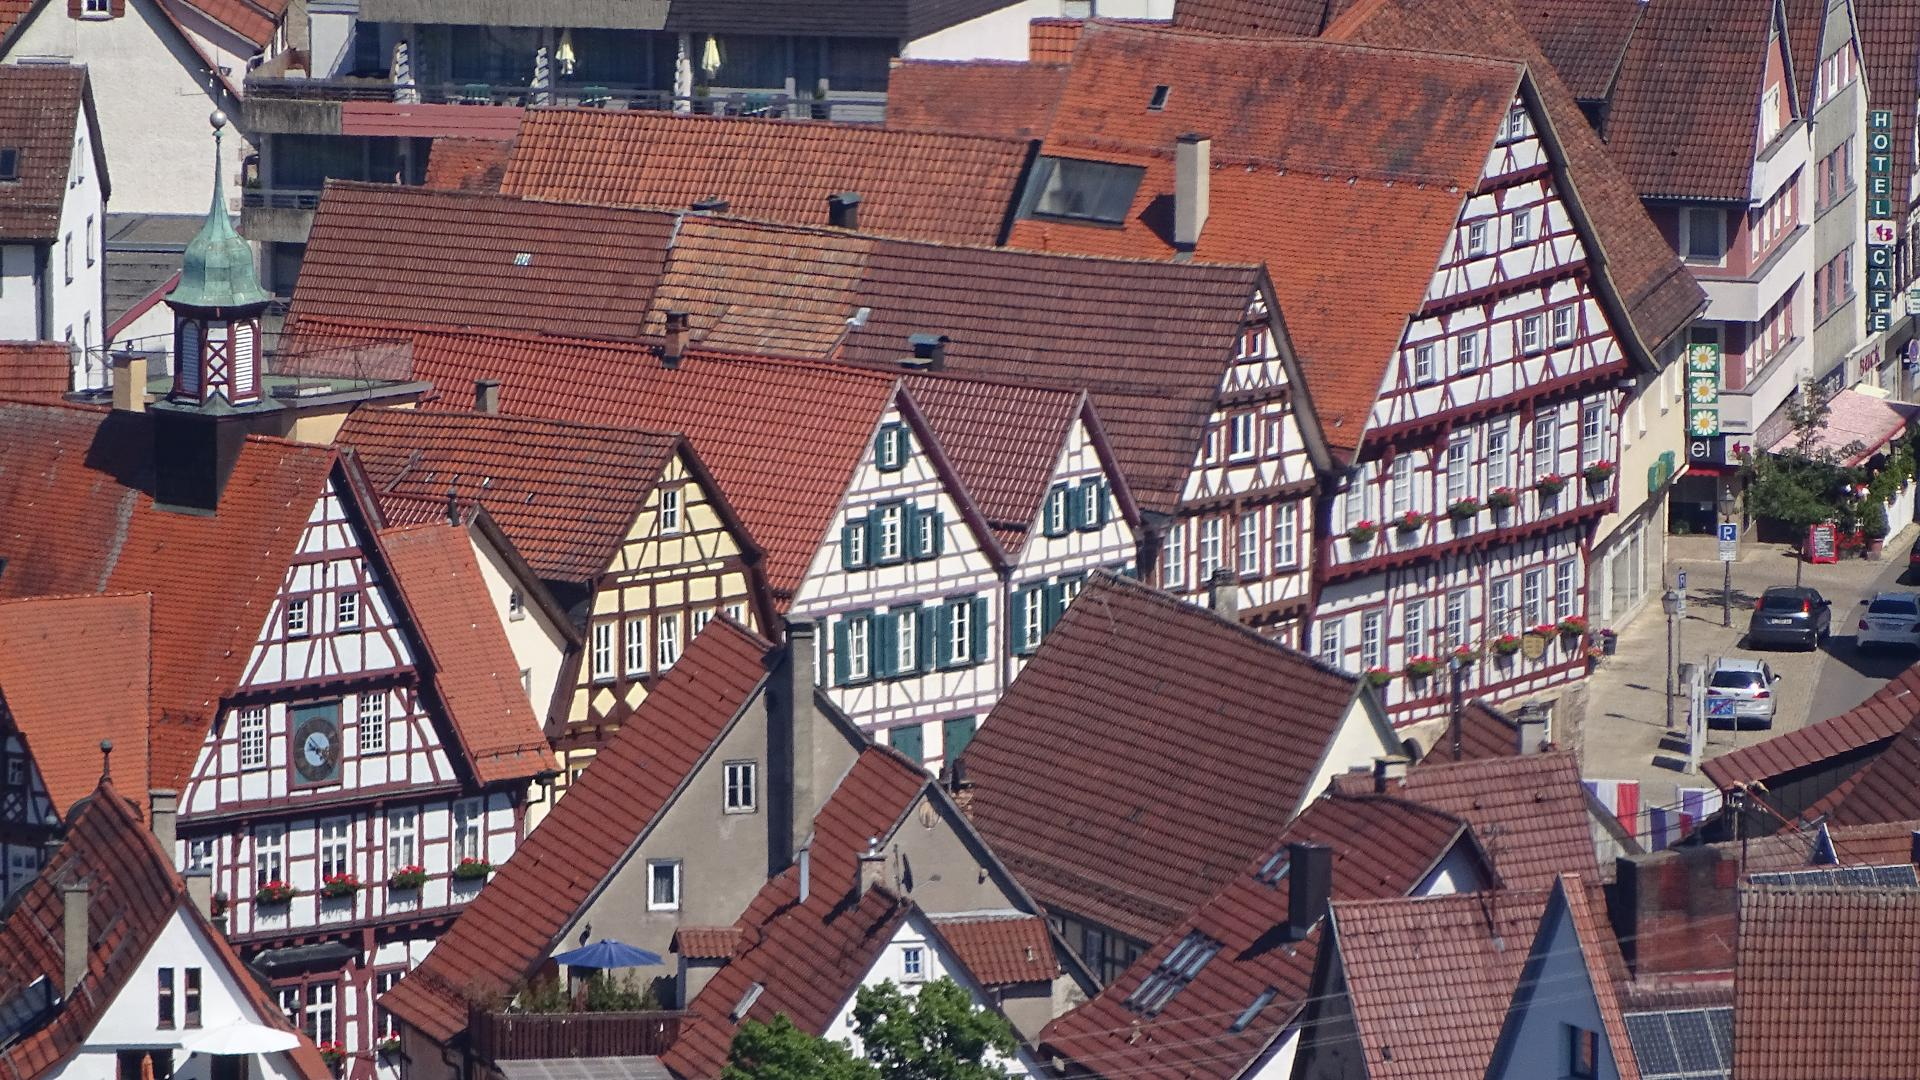 Blick auf den historischen Marktplatz von der Burgruine aus